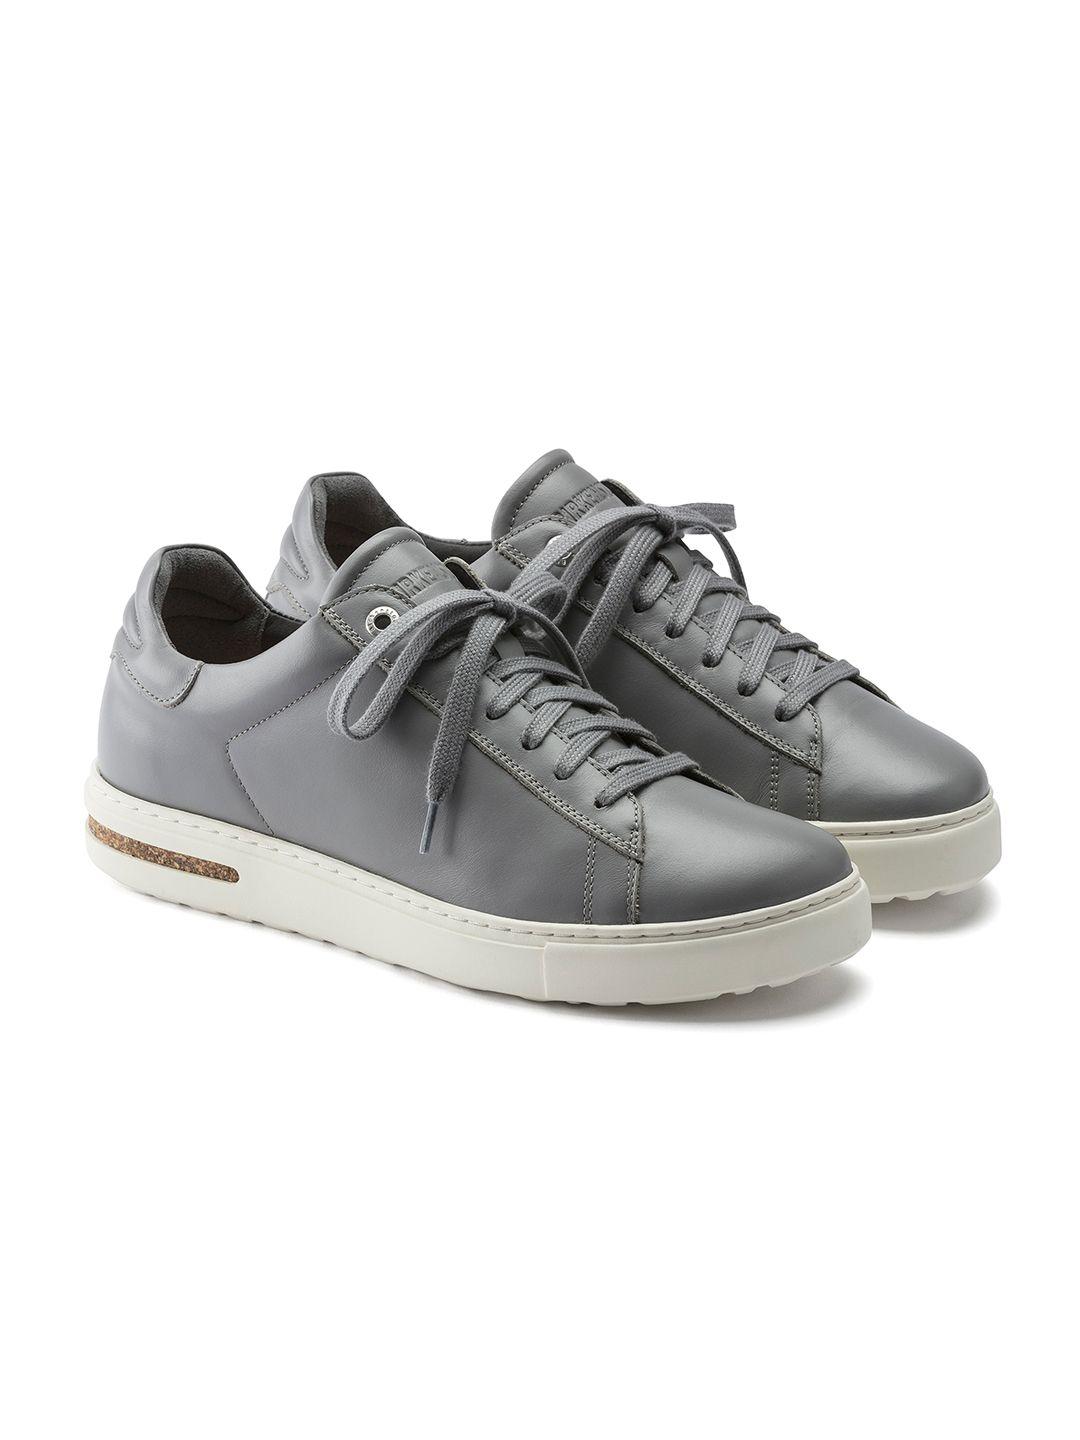 birkenstock grey narrow width solid bend casual sneakers